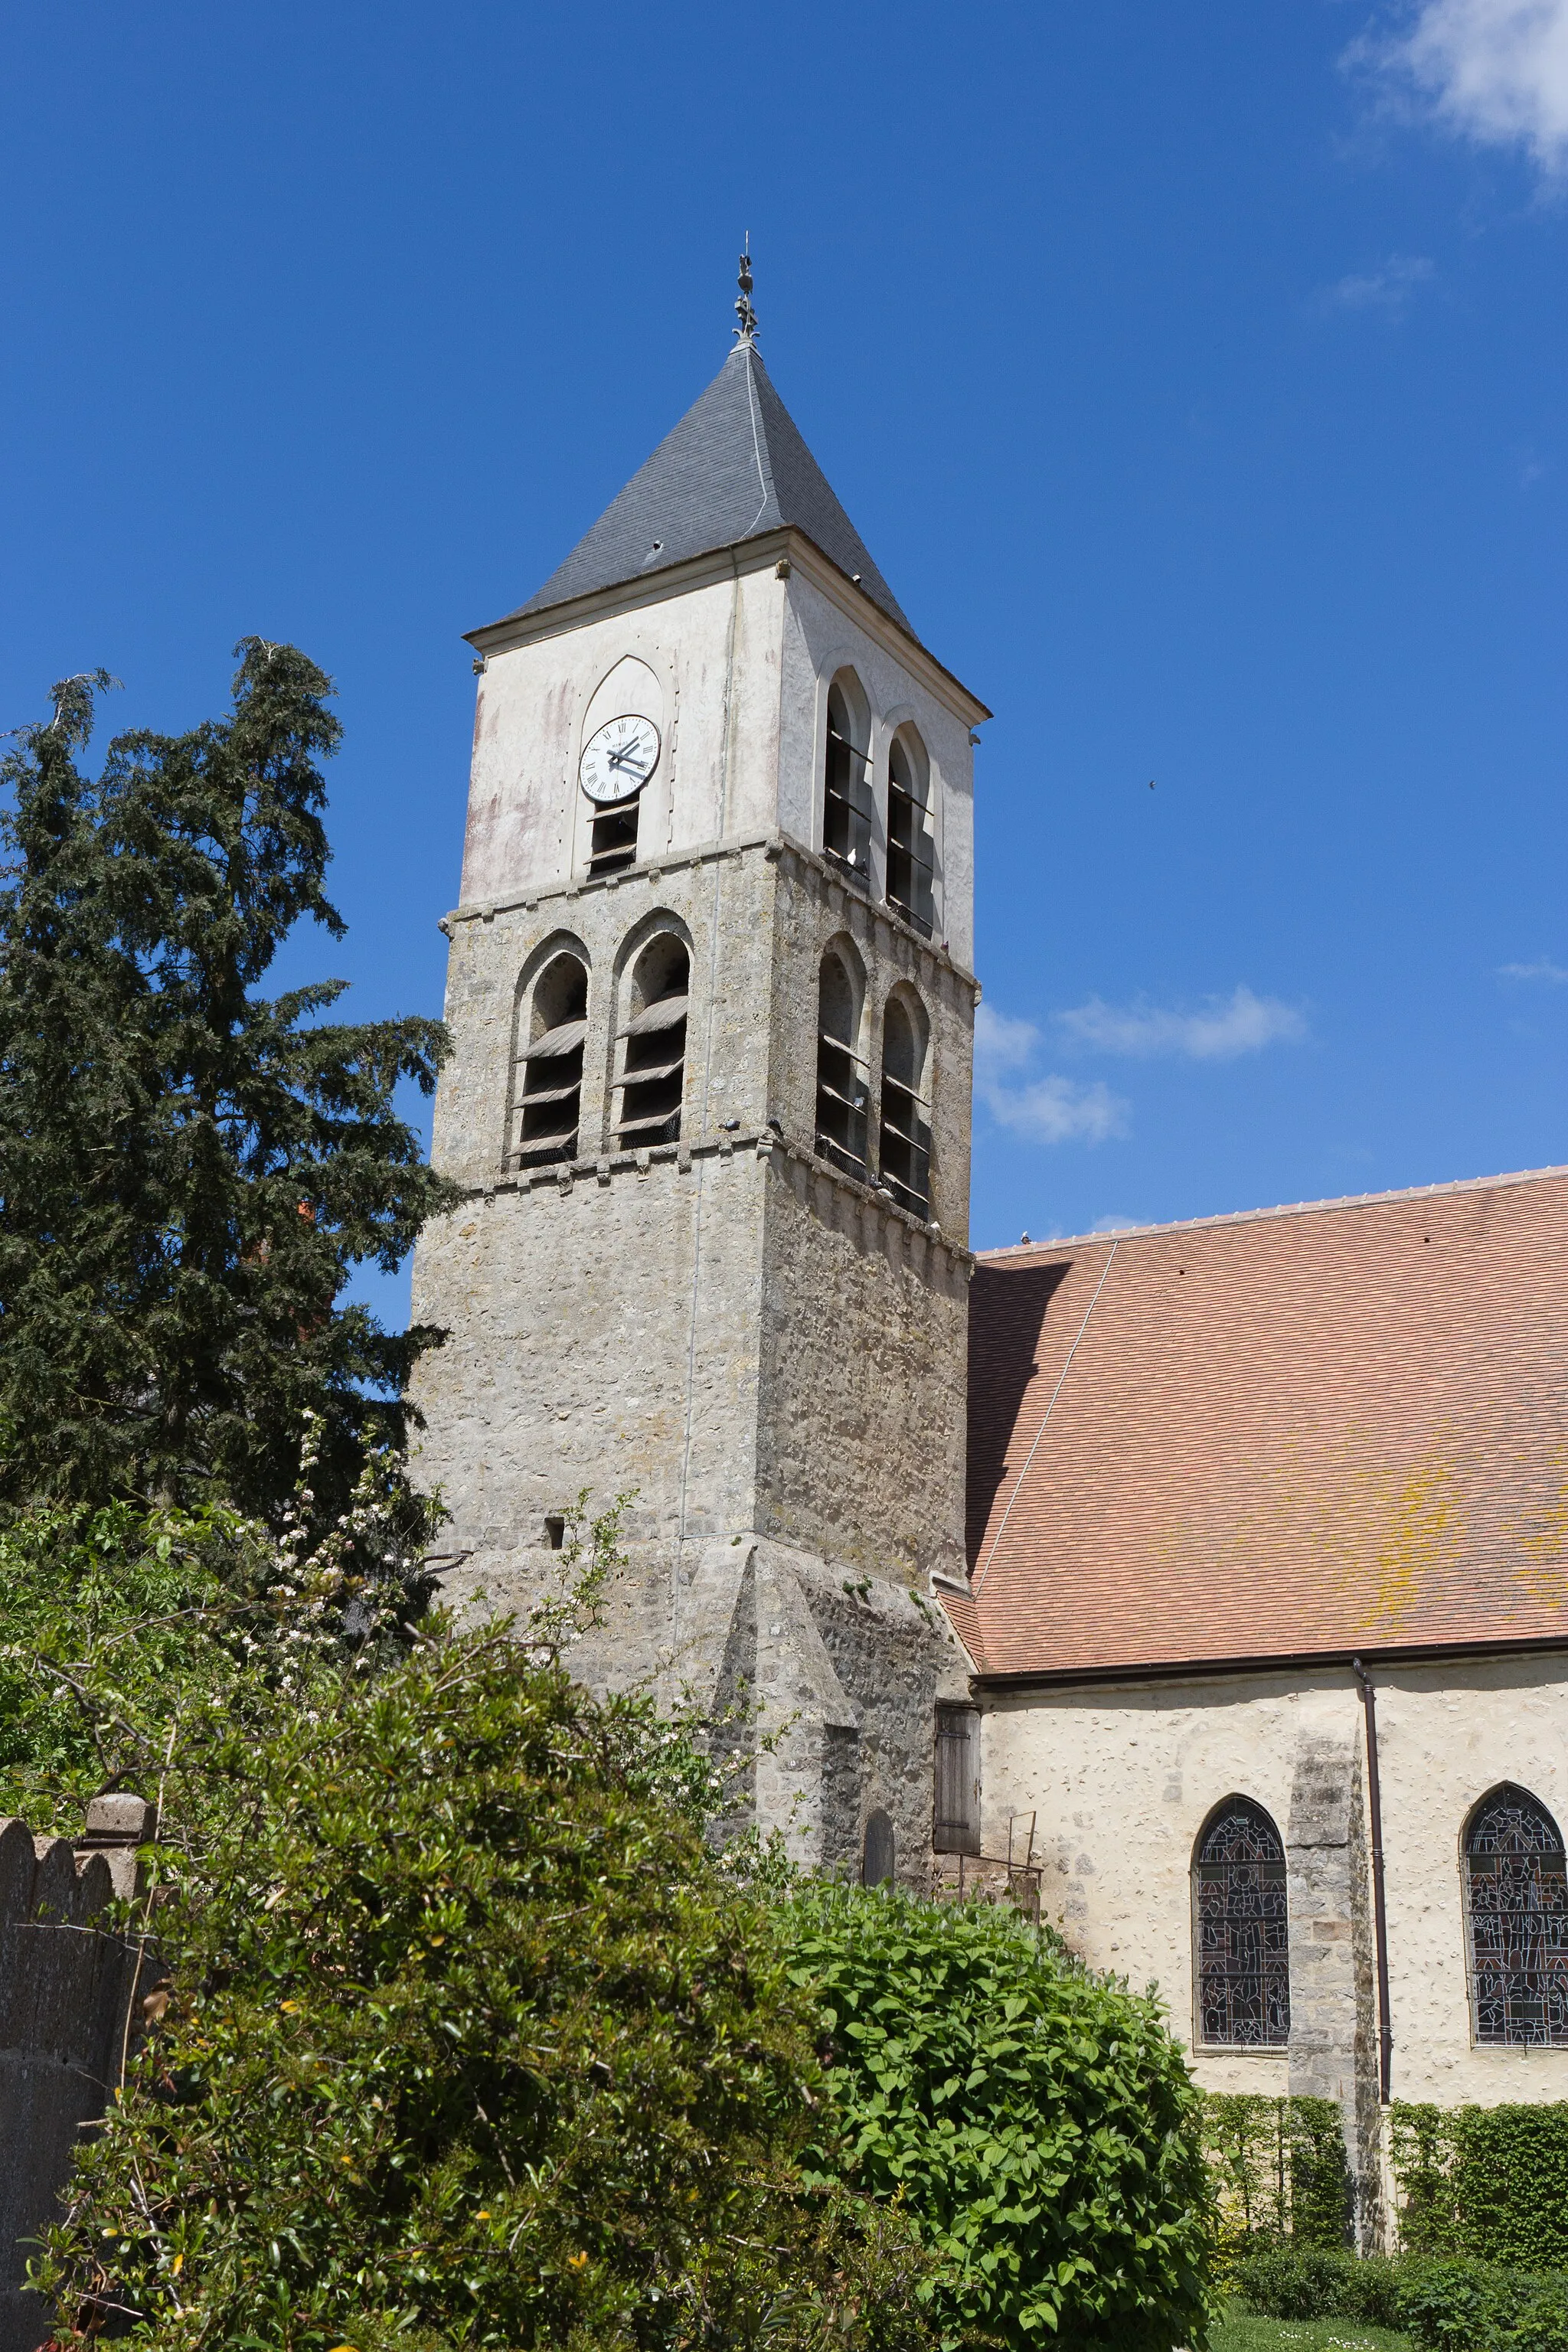 Photo showing: Église de Cerny, Cerny, département de l'Essonne, France.